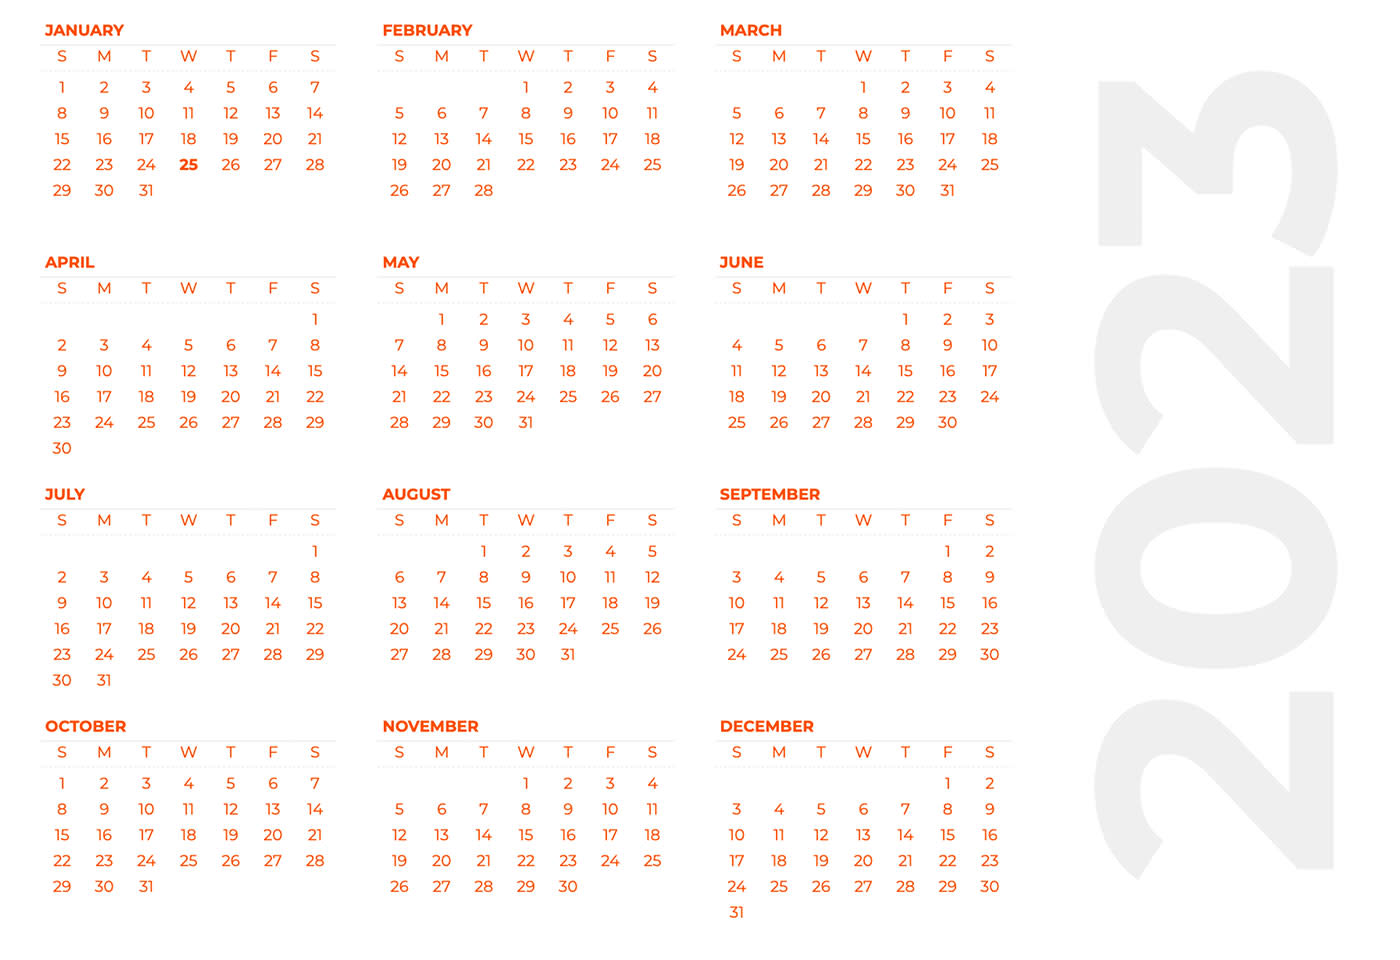 Screenshot of an annual marketing calendar template for 2023.